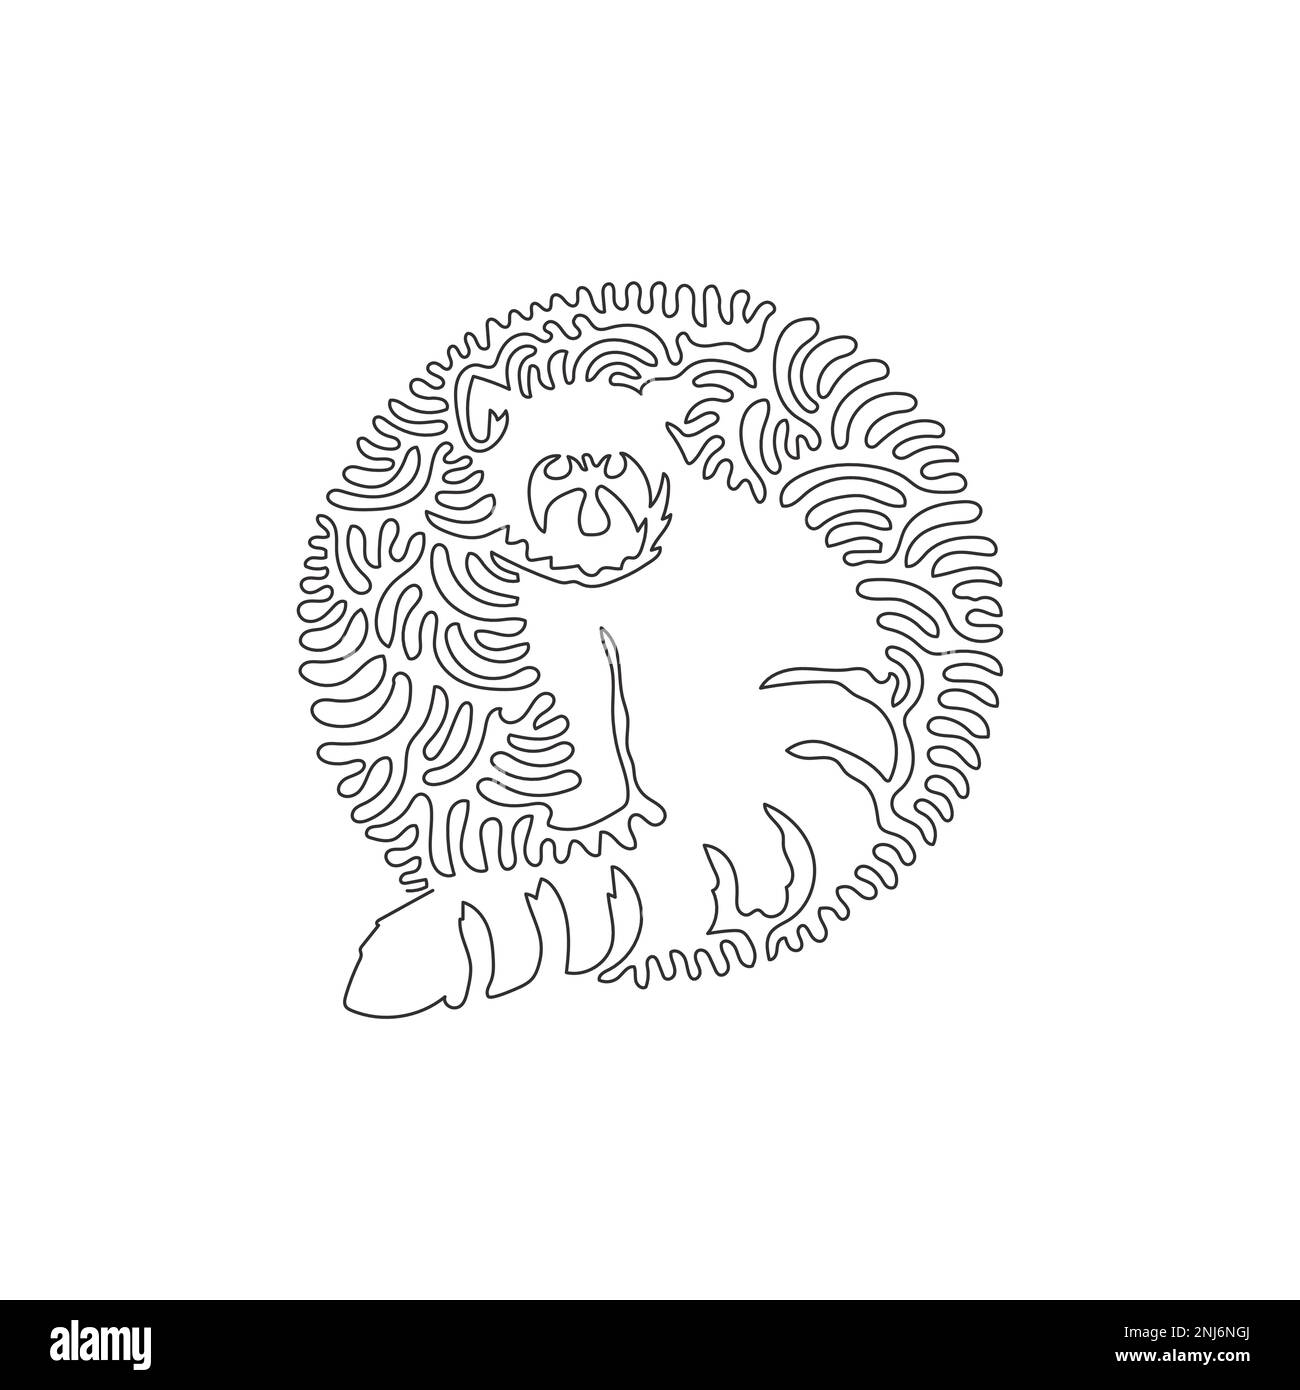 Curva continua una linea di disegno di bella rossa panda astratto arte in cerchio. Illustrazione vettoriale modificabile a riga singola di un affascinante panda rosso Illustrazione Vettoriale